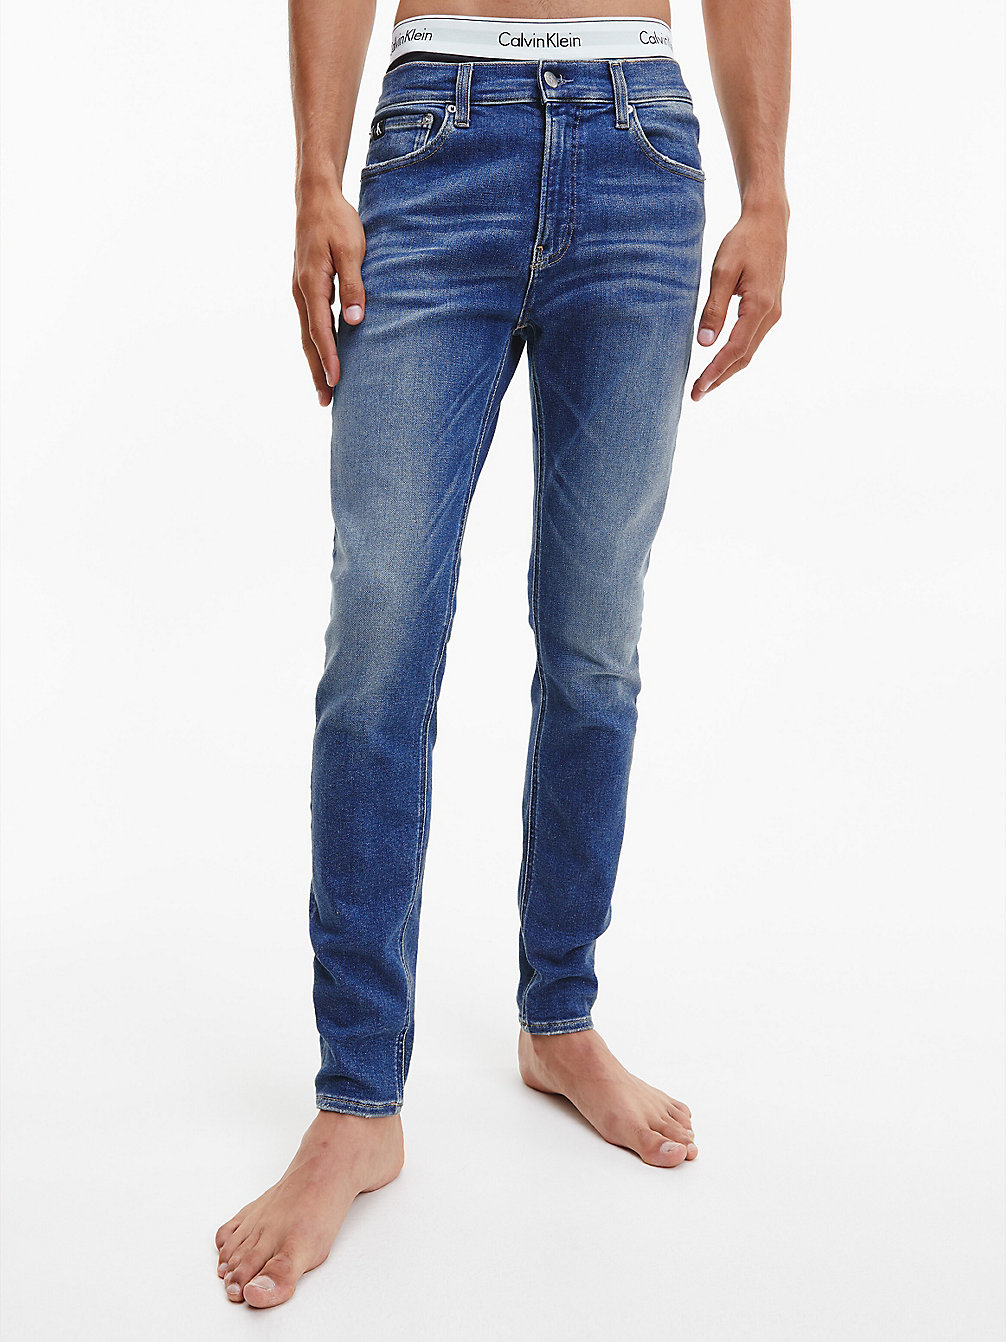 DENIM DARK Super Skinny Jeans undefined Herren Calvin Klein